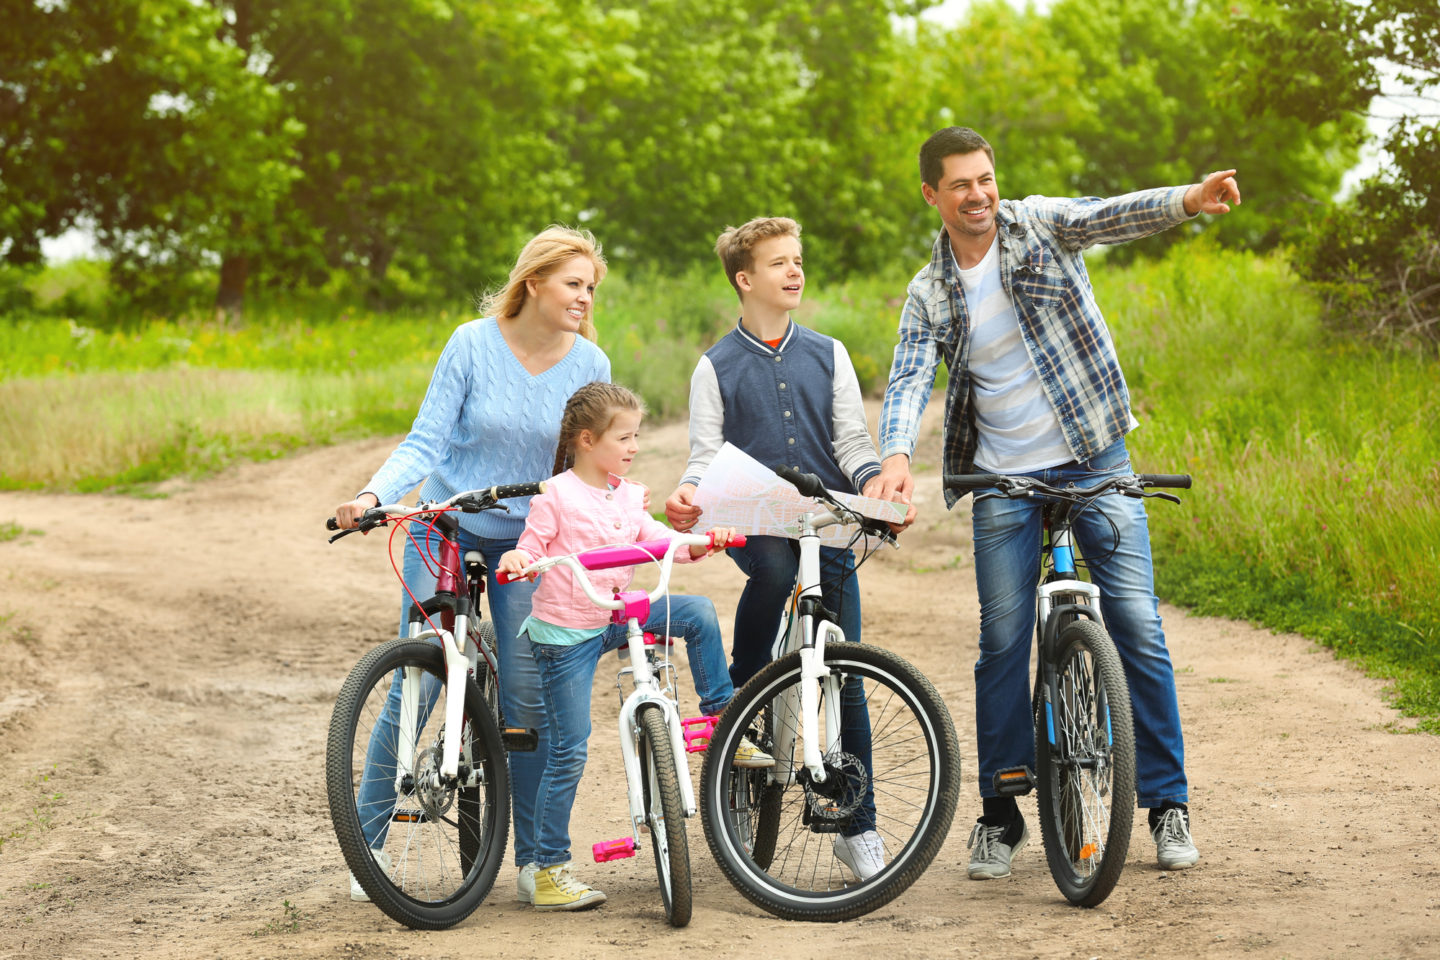 kids outdoor activities family bike ride